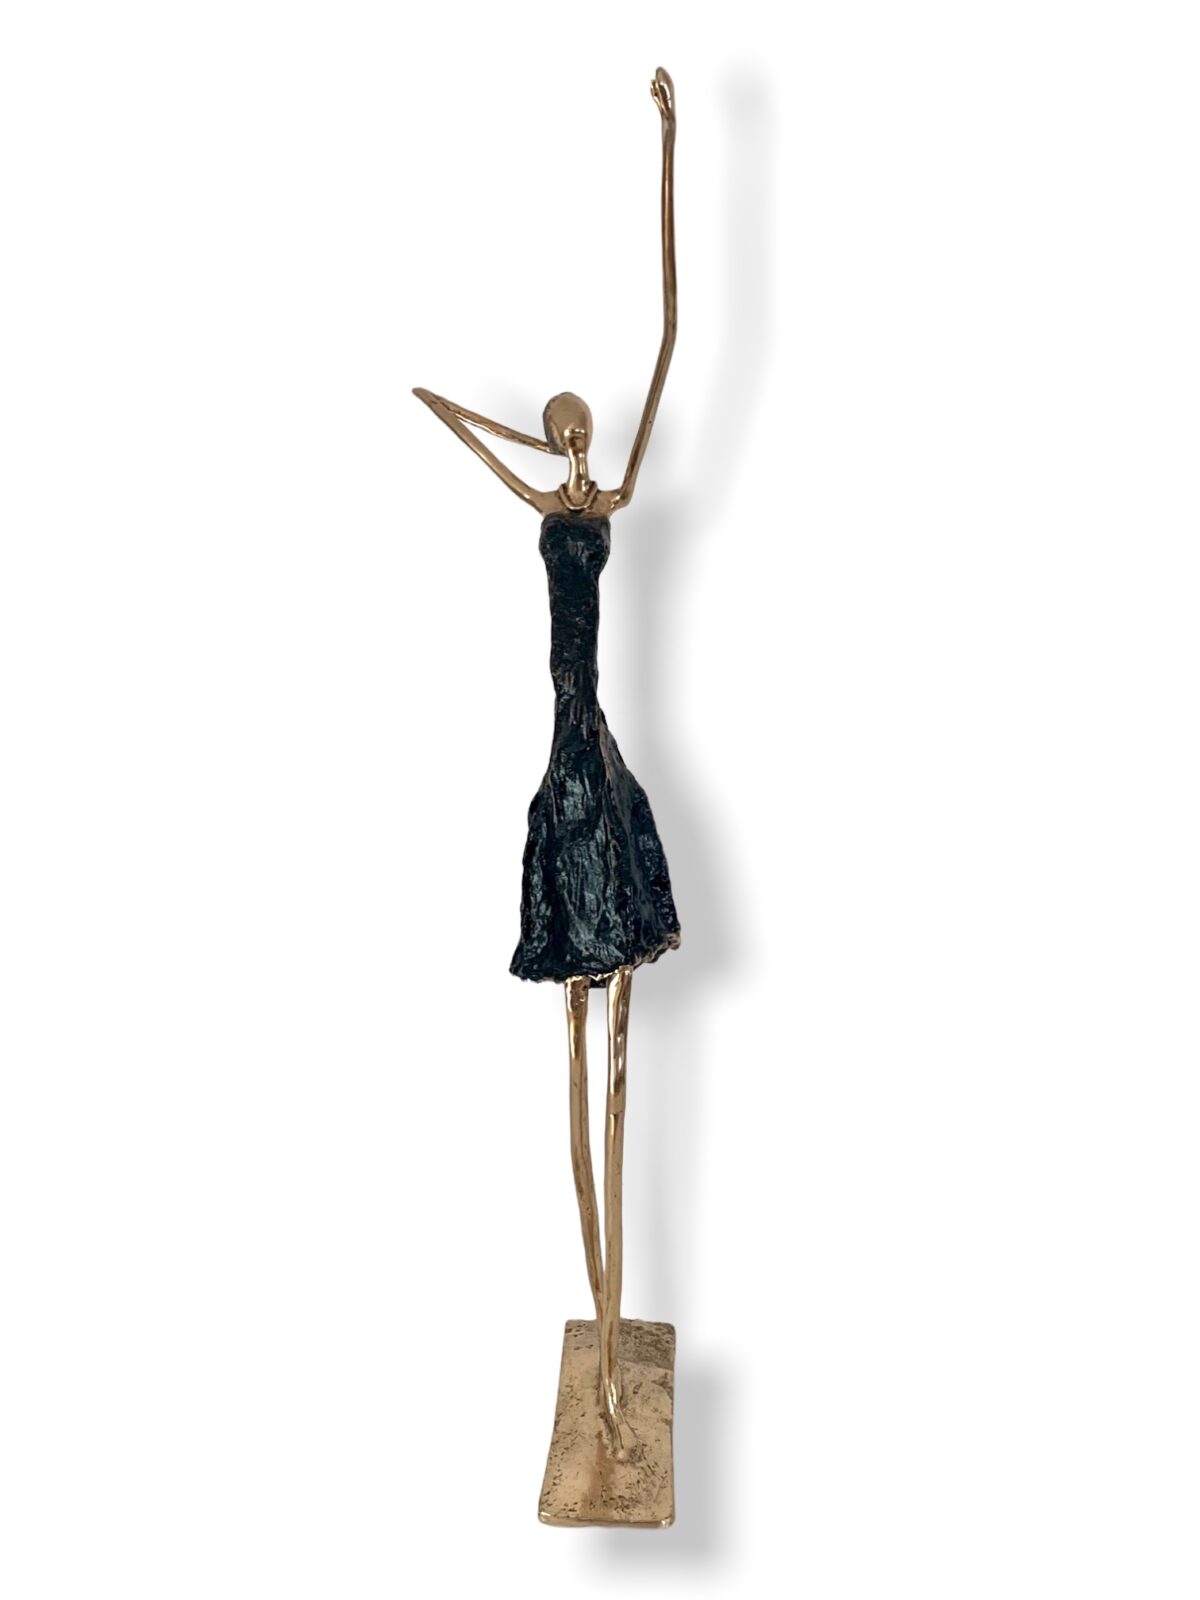 Bronze - patine noire - Femme en dialogue avec le ciel - Sculpture Magali Willems